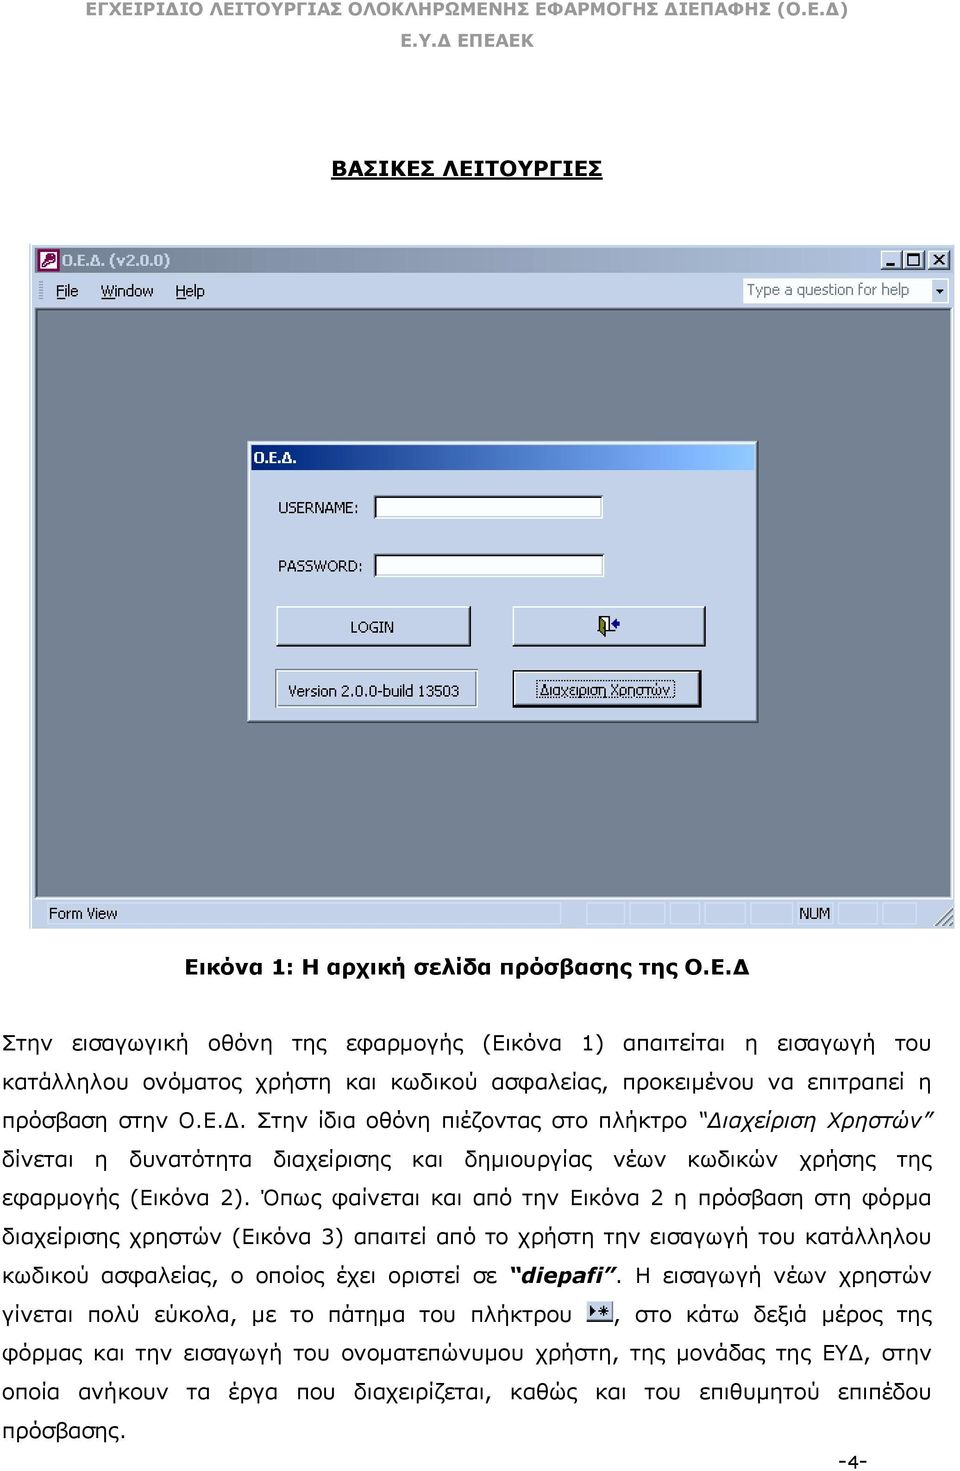 Όπως φαίνεται και από την Εικόνα 2 η πρόσβαση στη φόρµα διαχείρισης χρηστών (Εικόνα 3) απαιτεί από το χρήστη την εισαγωγή του κατάλληλου κωδικού ασφαλείας, ο οποίος έχει οριστεί σε diepafi.